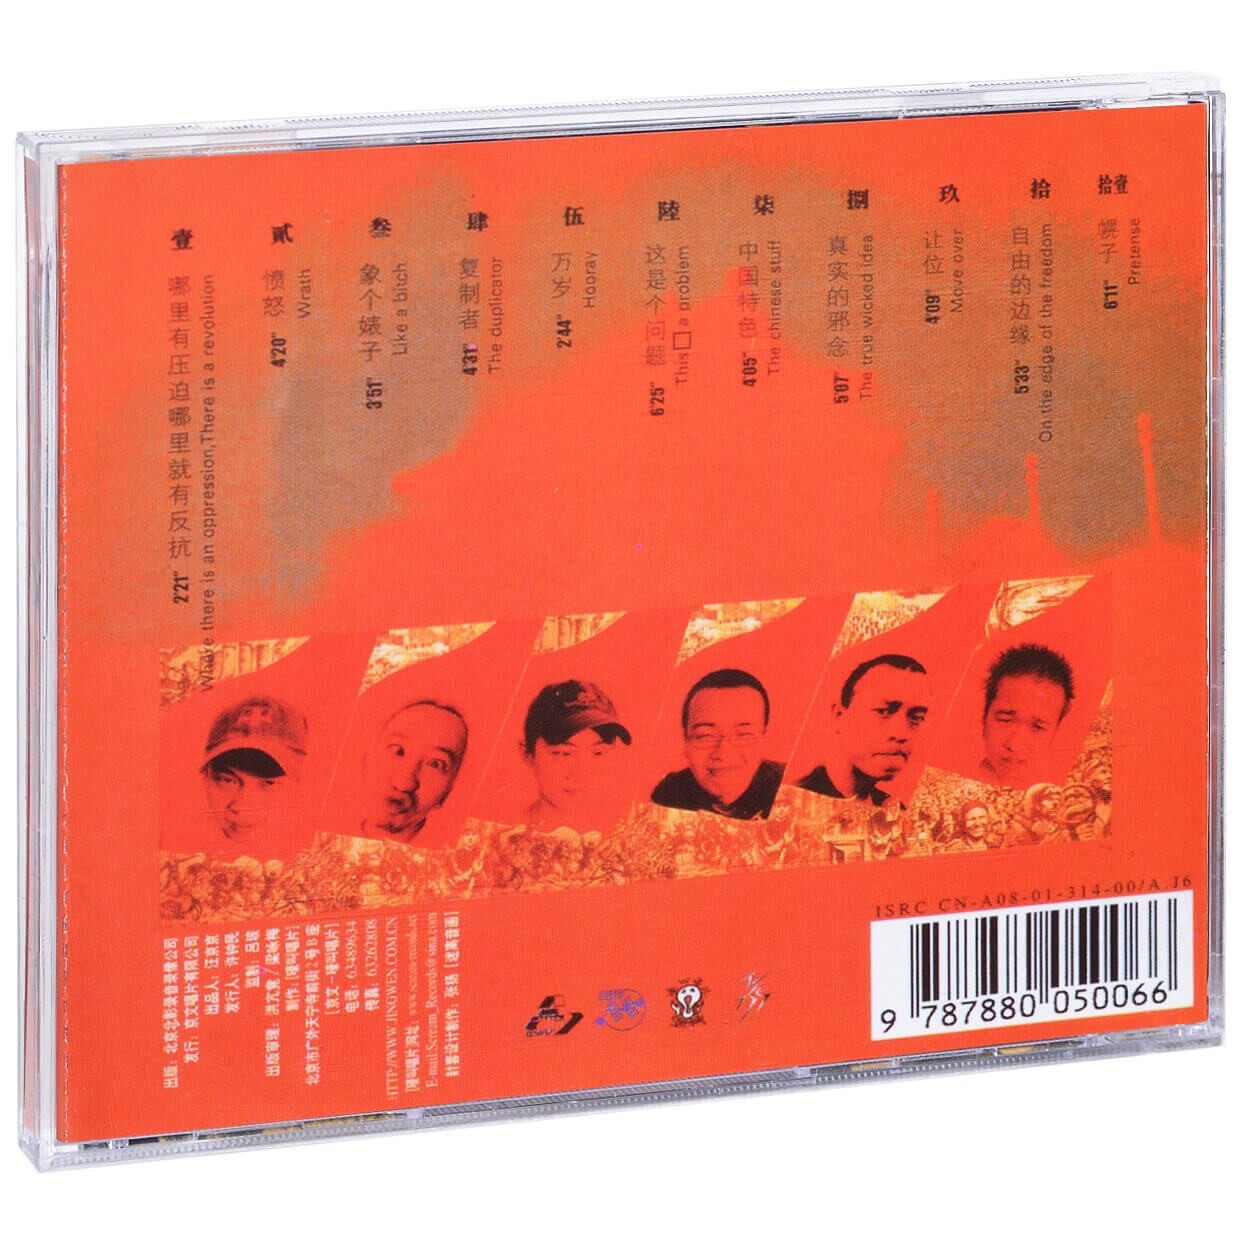 正版痛仰乐队专辑这是个问题 CD+歌词本摇滚音乐车载碟唱片-图0